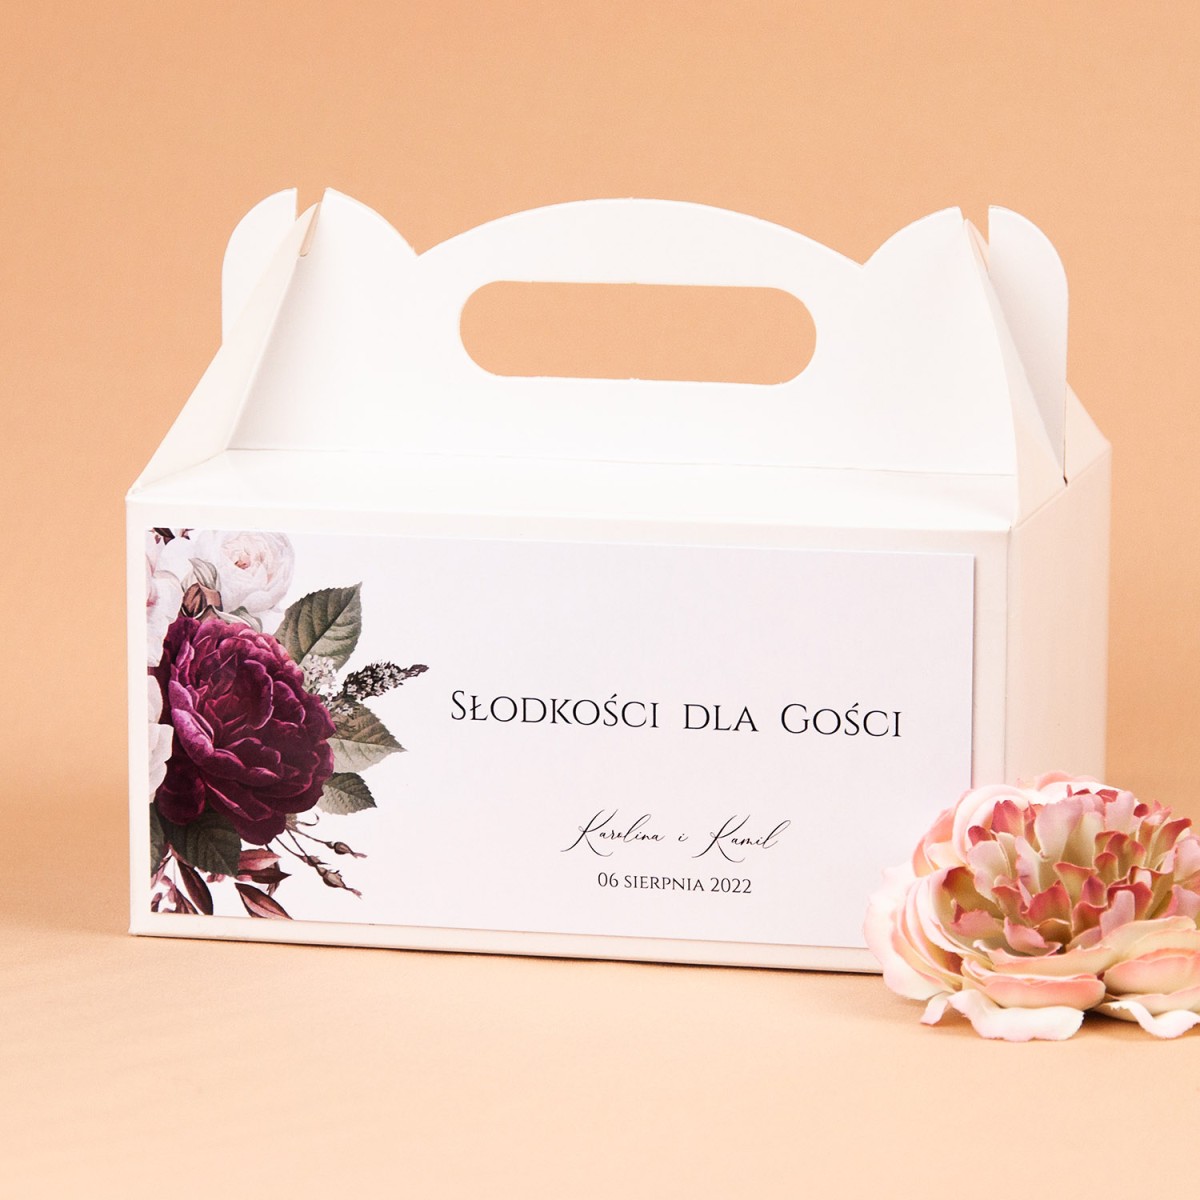 Pudełka na ciasto weselne z białymi i bordowymi kwiatami - Rose & White, Maroon Flowers